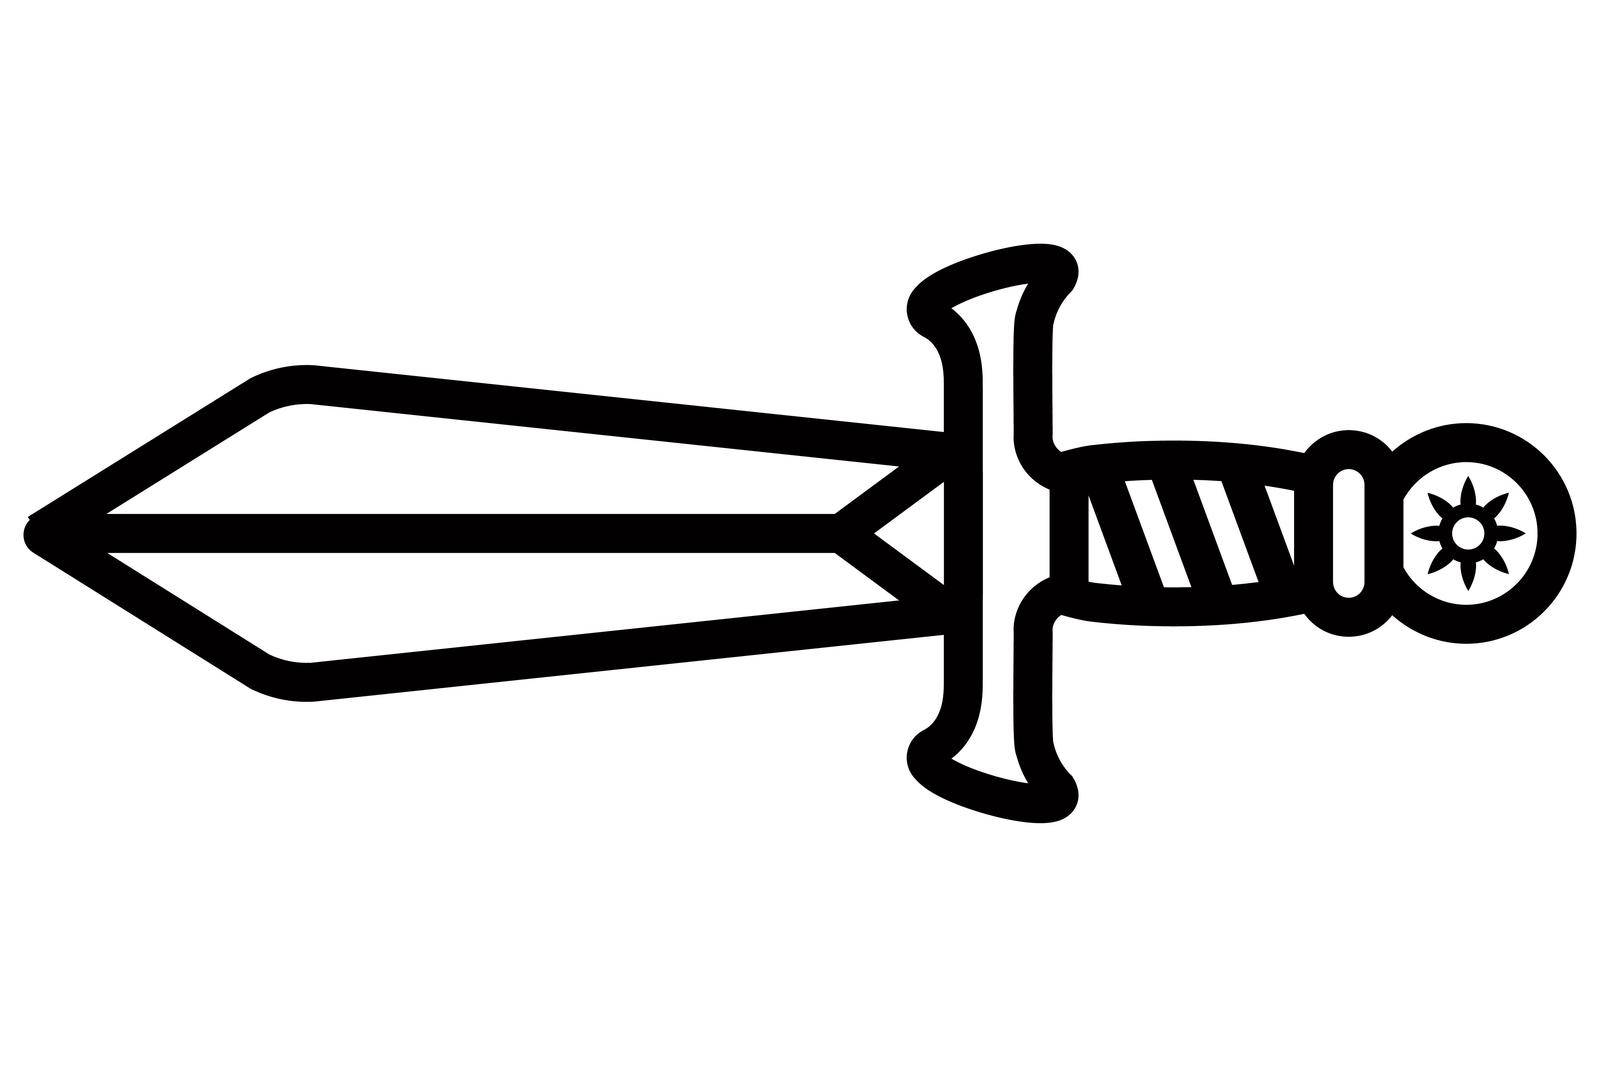 short medieval sword black linear icon. flat vector illustration.